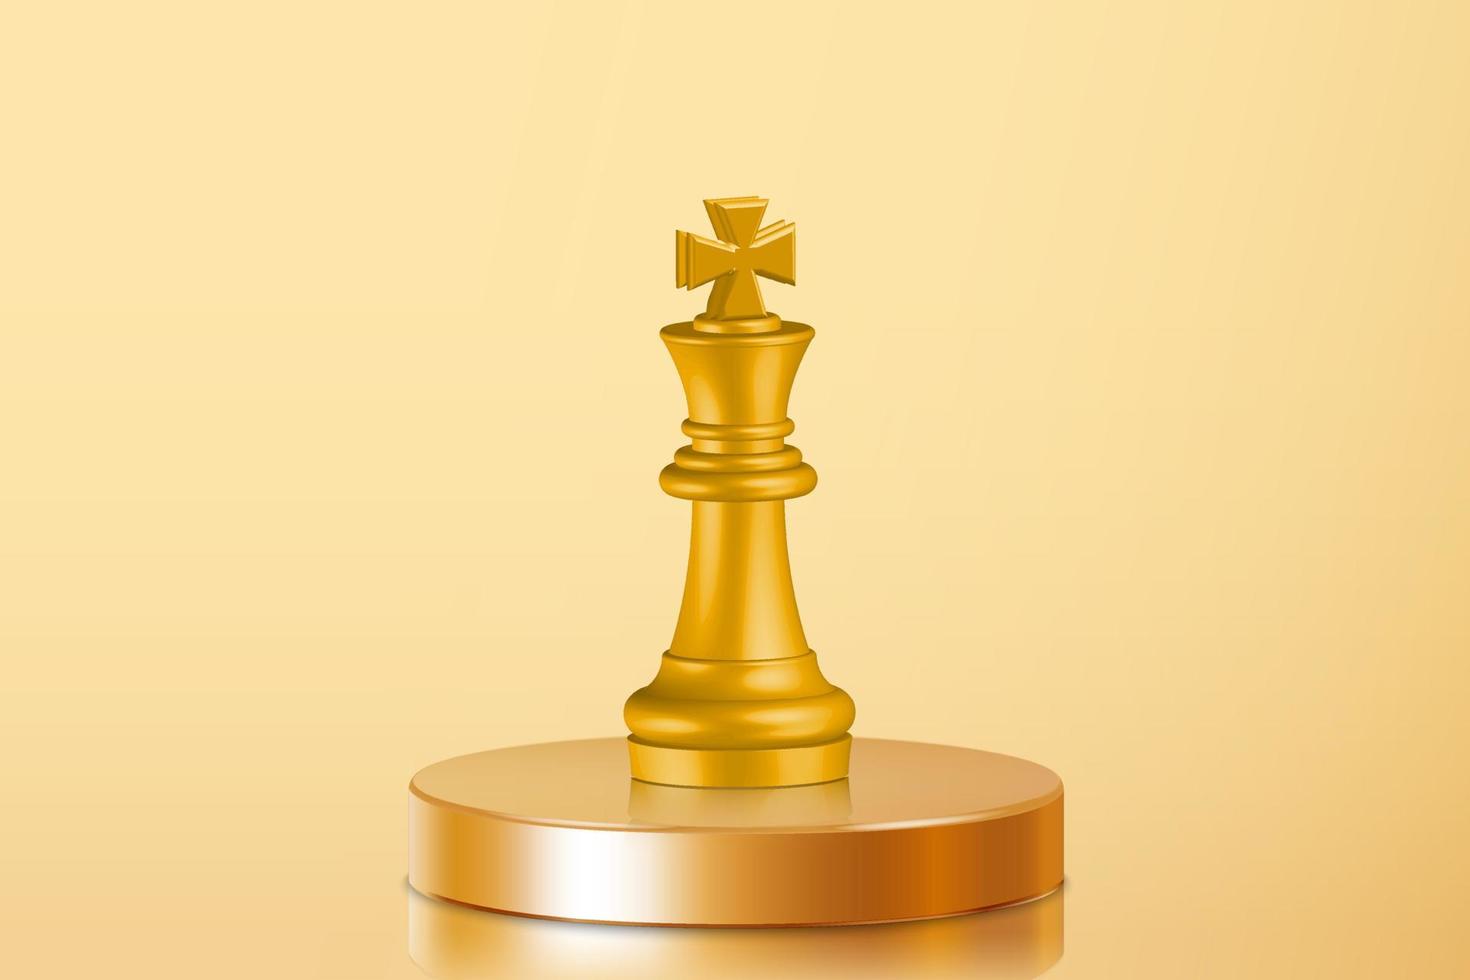 Figura do xadrez do rei do ouro 3d no centro do pódio dourado. alvo no alvo. meta de investimento empresarial, desafio de ideia, estratégia objetiva, ilustração do conceito de foco do ano vetor